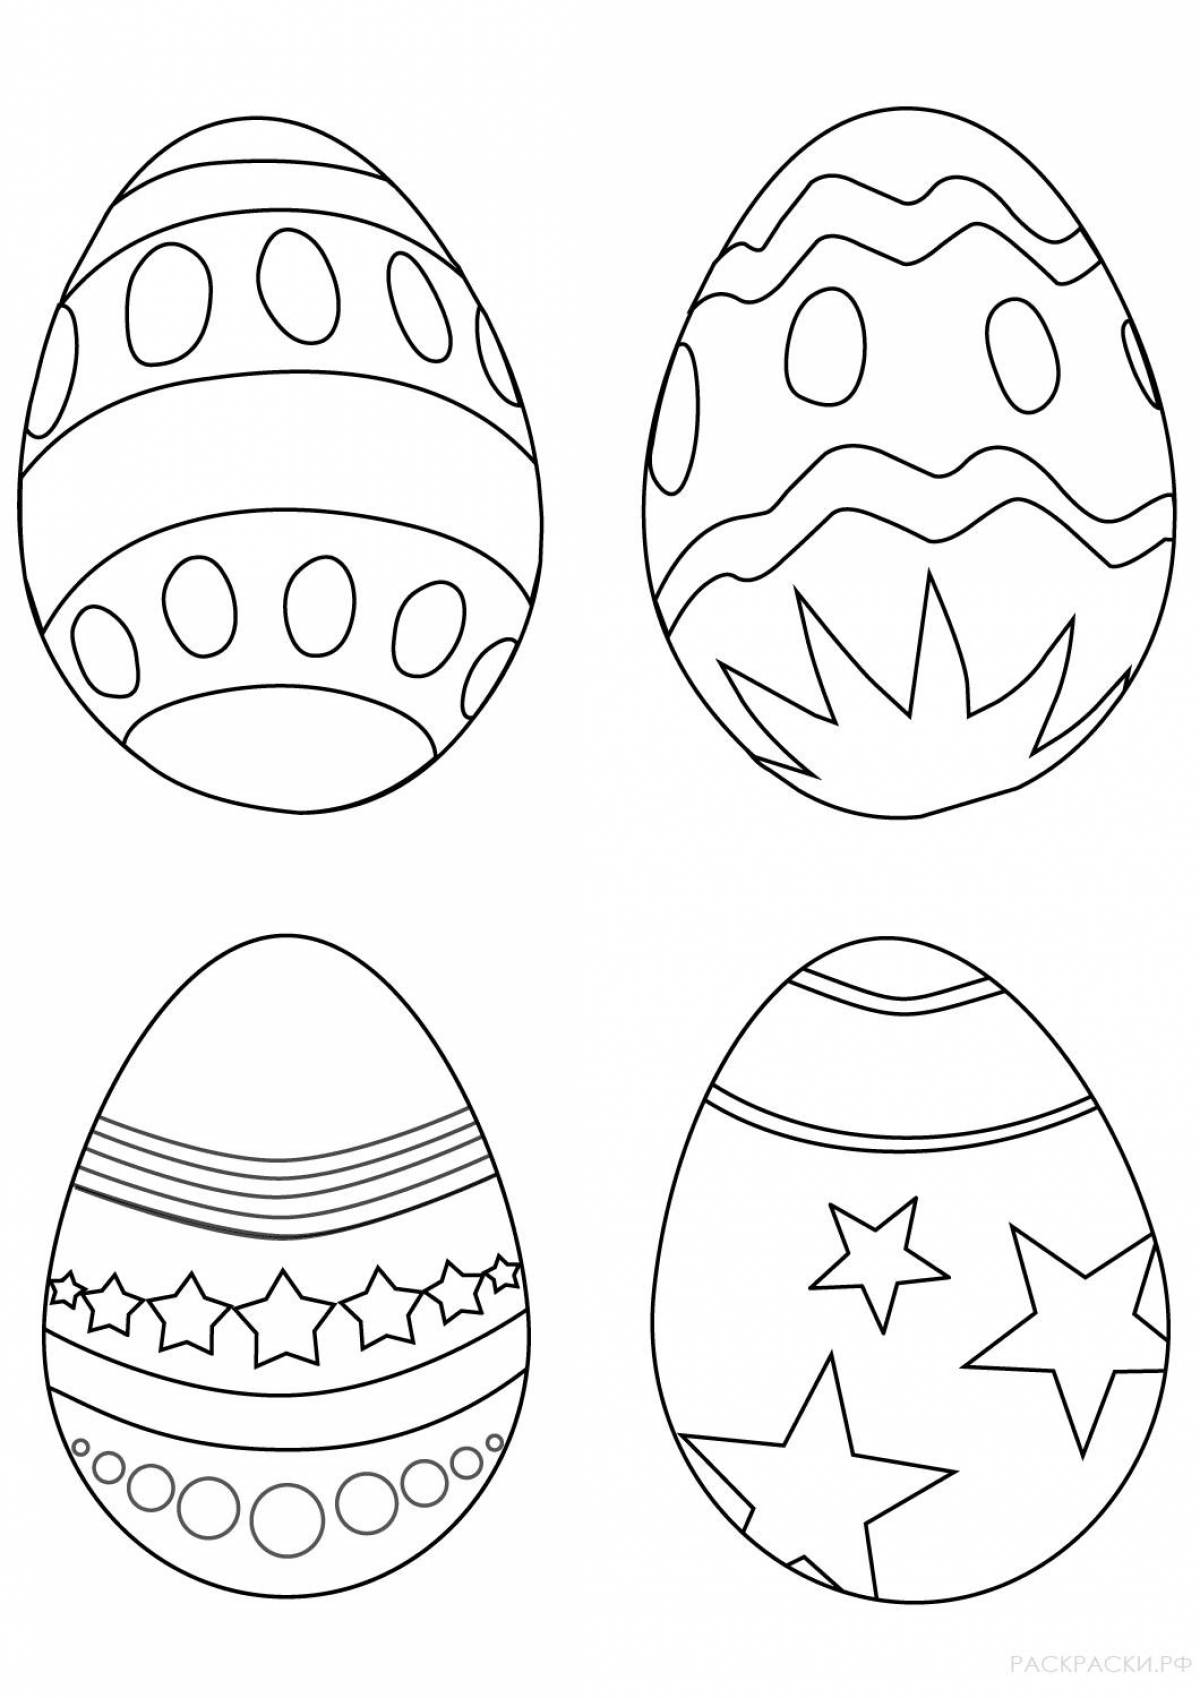 Раскрашиваем пасхальные. Пасхальное яйцо раскраска для детей 3-4 лет. Пасхальное яйцо раскраска для детей. Яйца разукрашка пасхальные яйца. Яйца на Пасху раскраска.